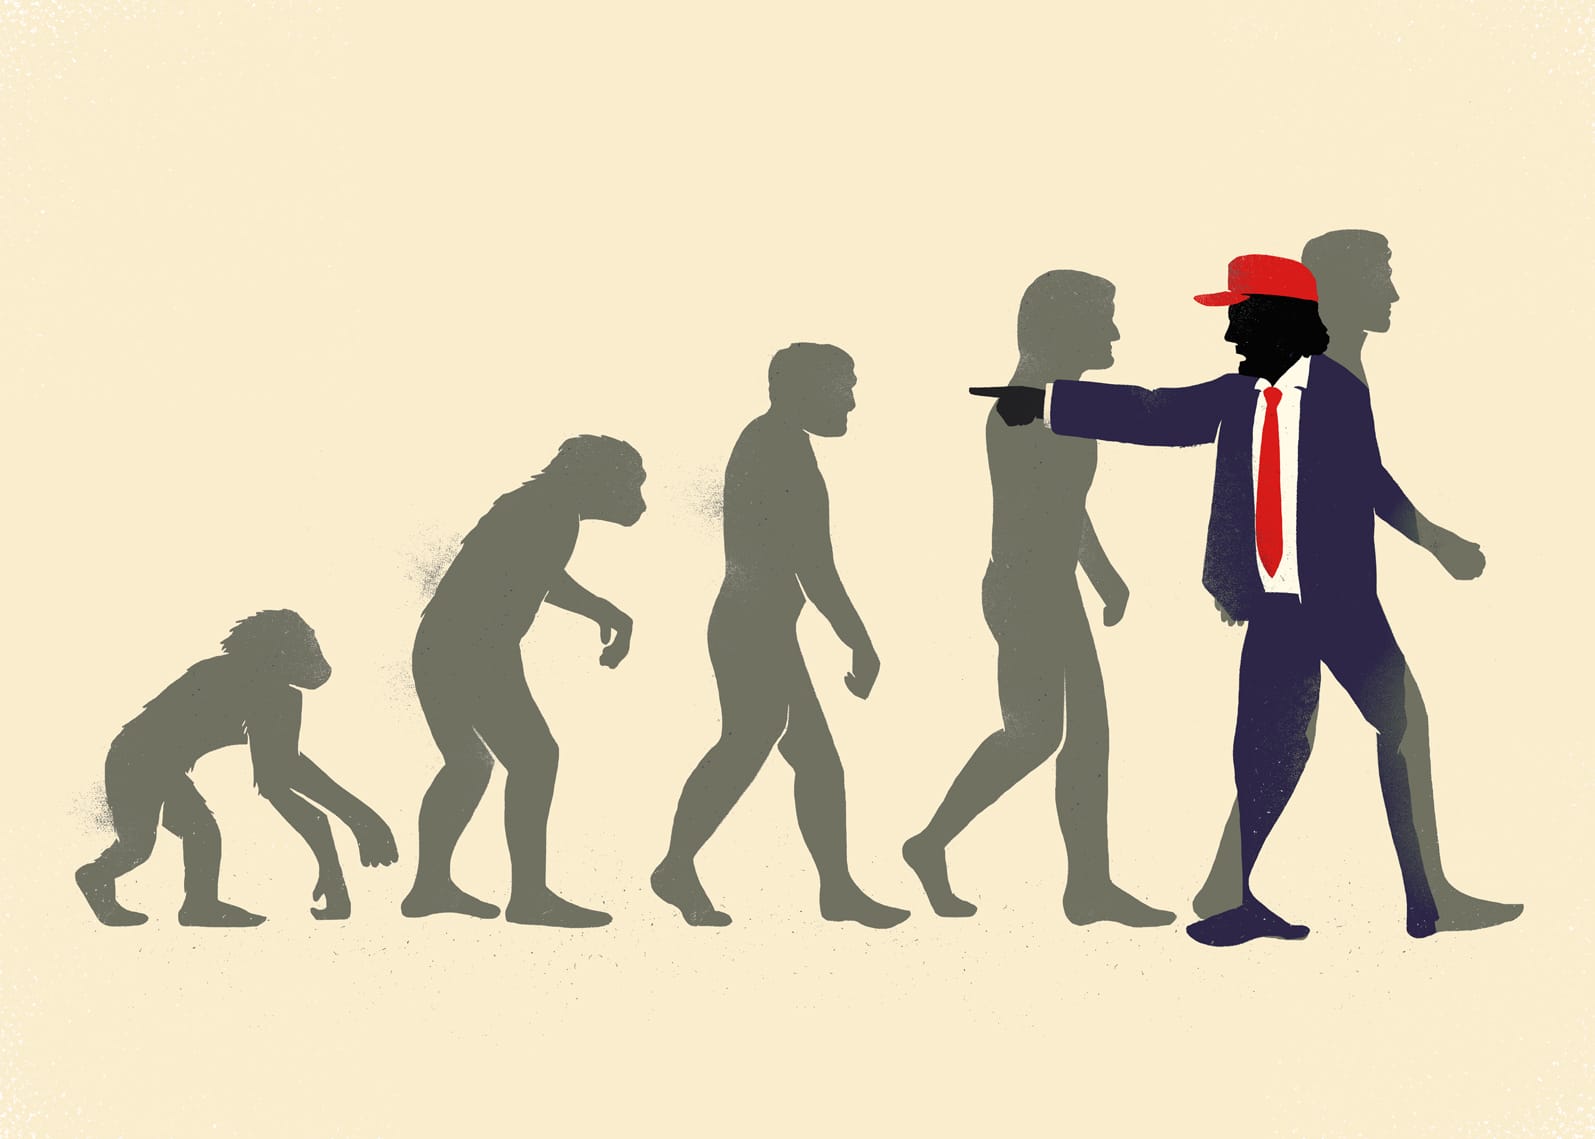 Sur fond jaune pâle, les silhouettes des différentes étapes de l'évolution de l'homme sont pochées en gris. Trump est représenté comme allant dans le sens inverse de l'évolution et pointant du doigt le passé.